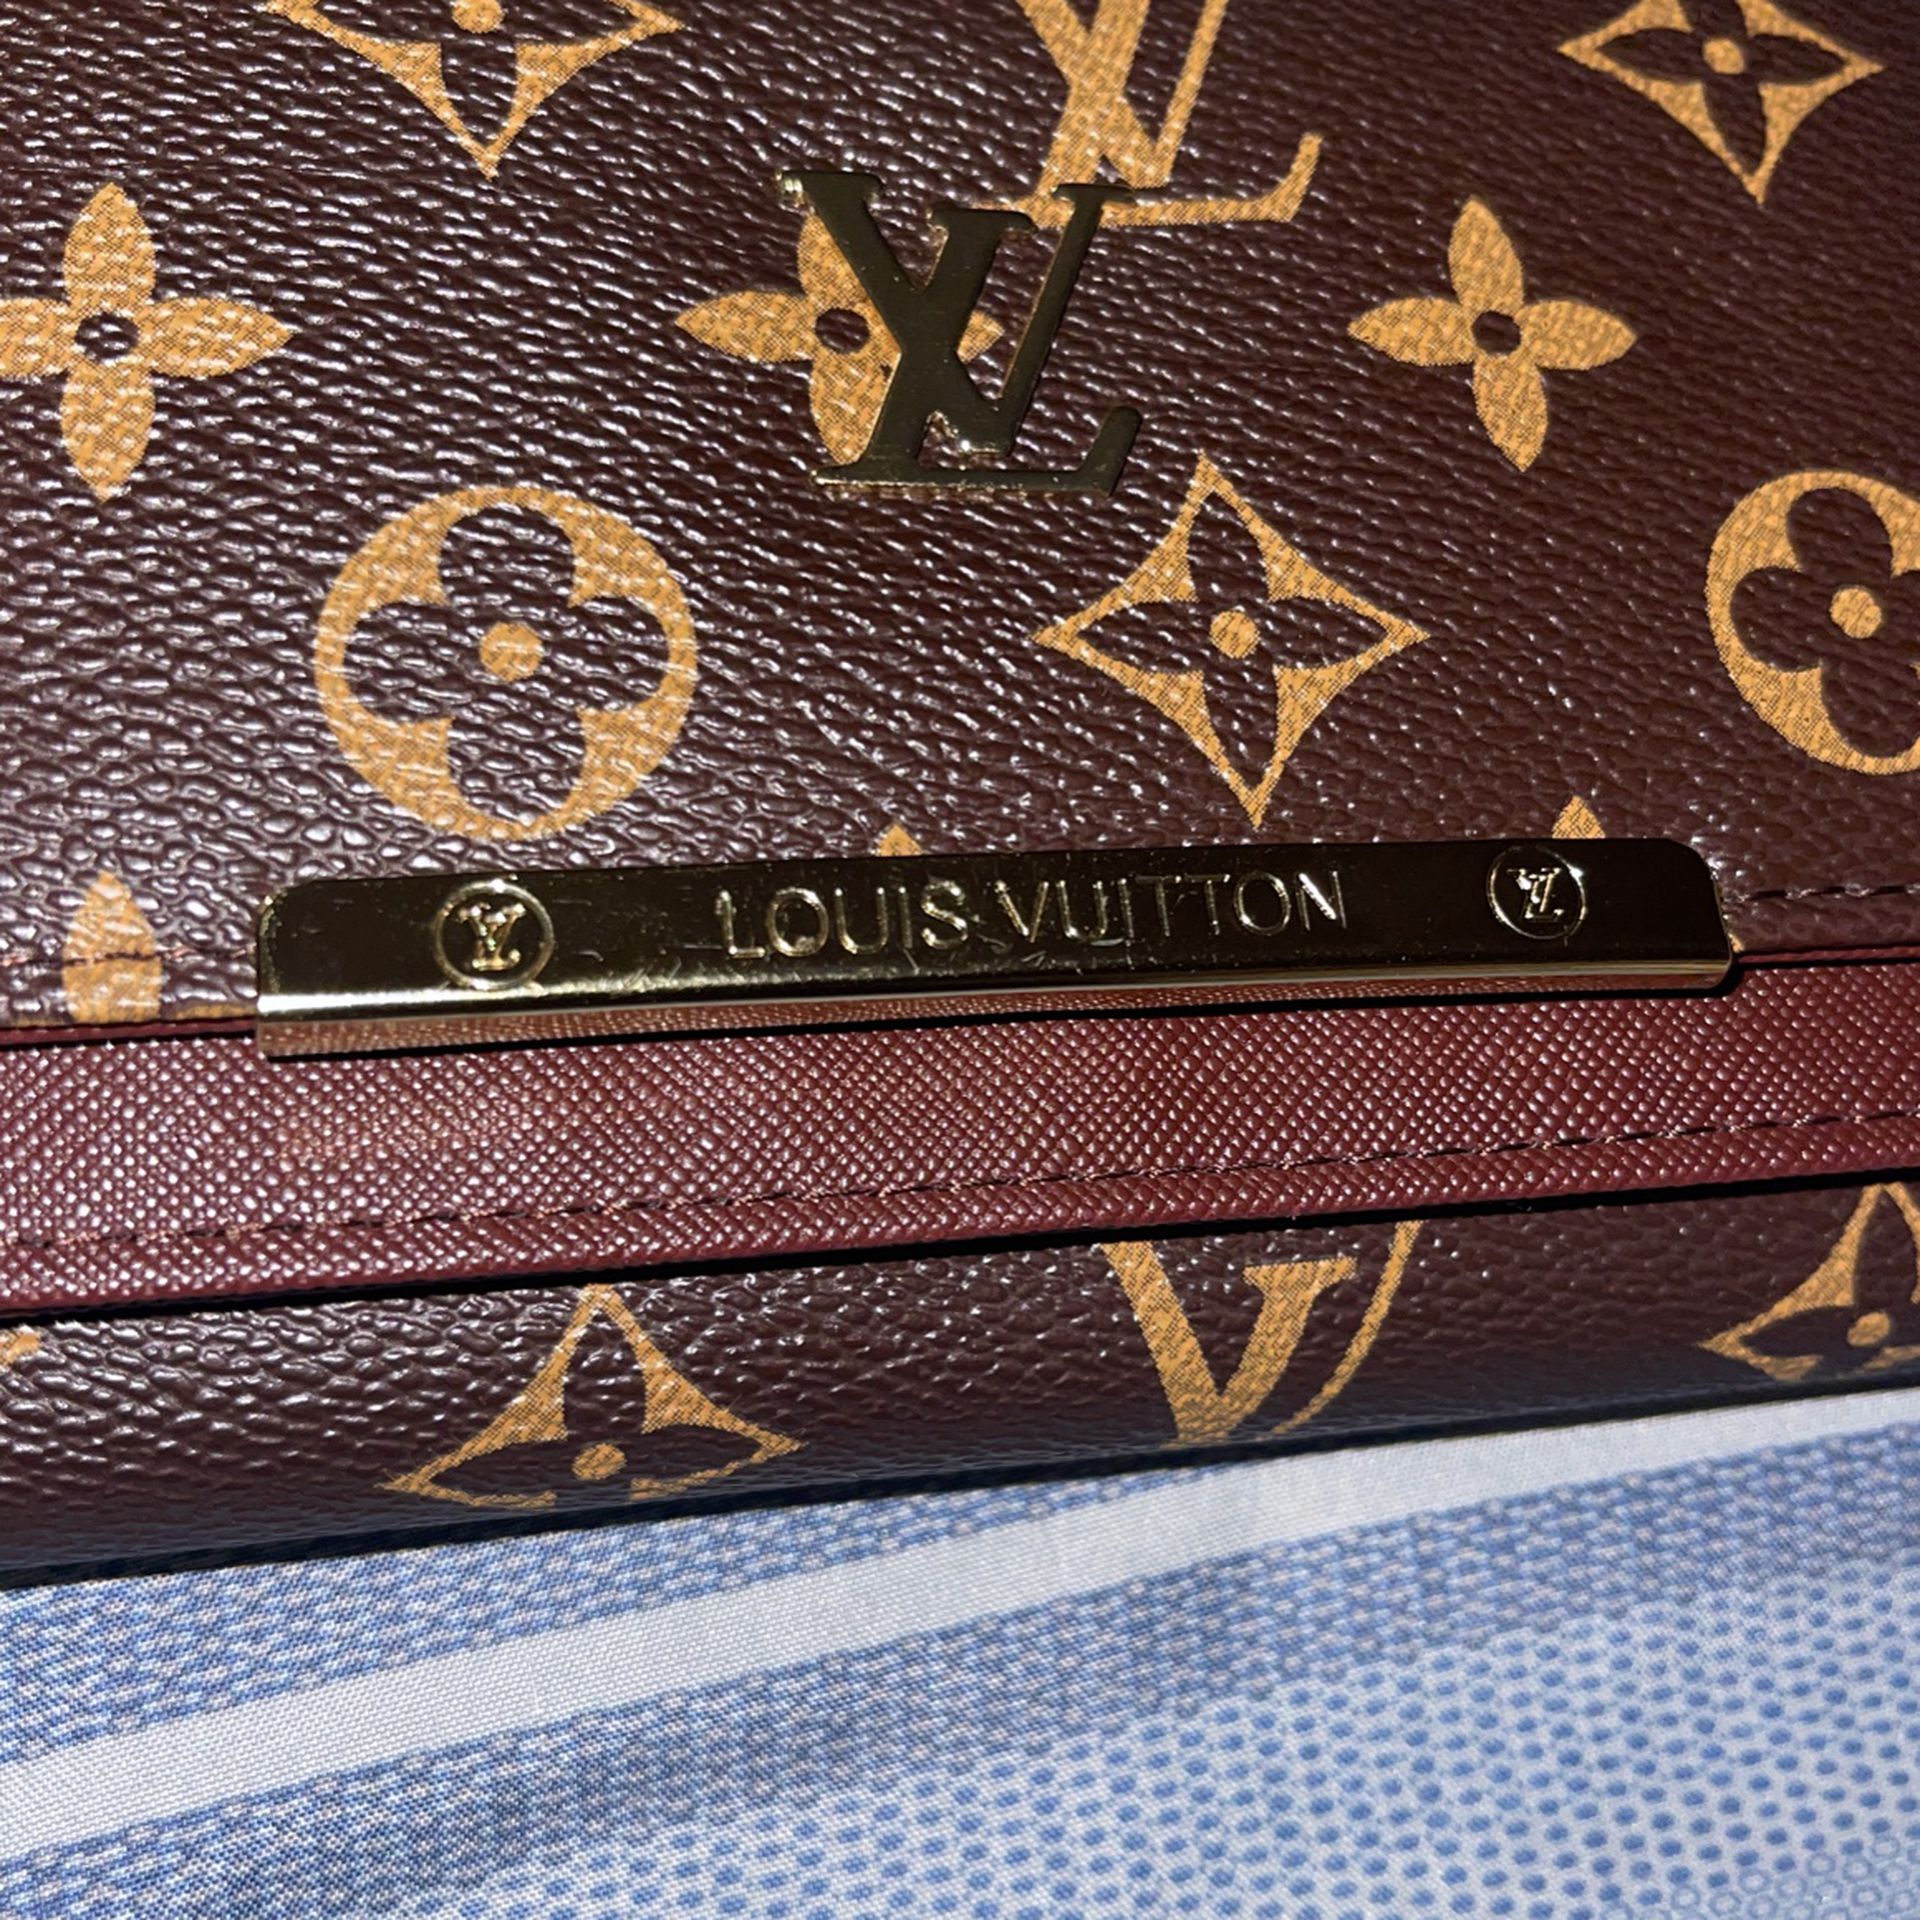 Louis Vuitton Wallets for sale in Iowa City, Iowa